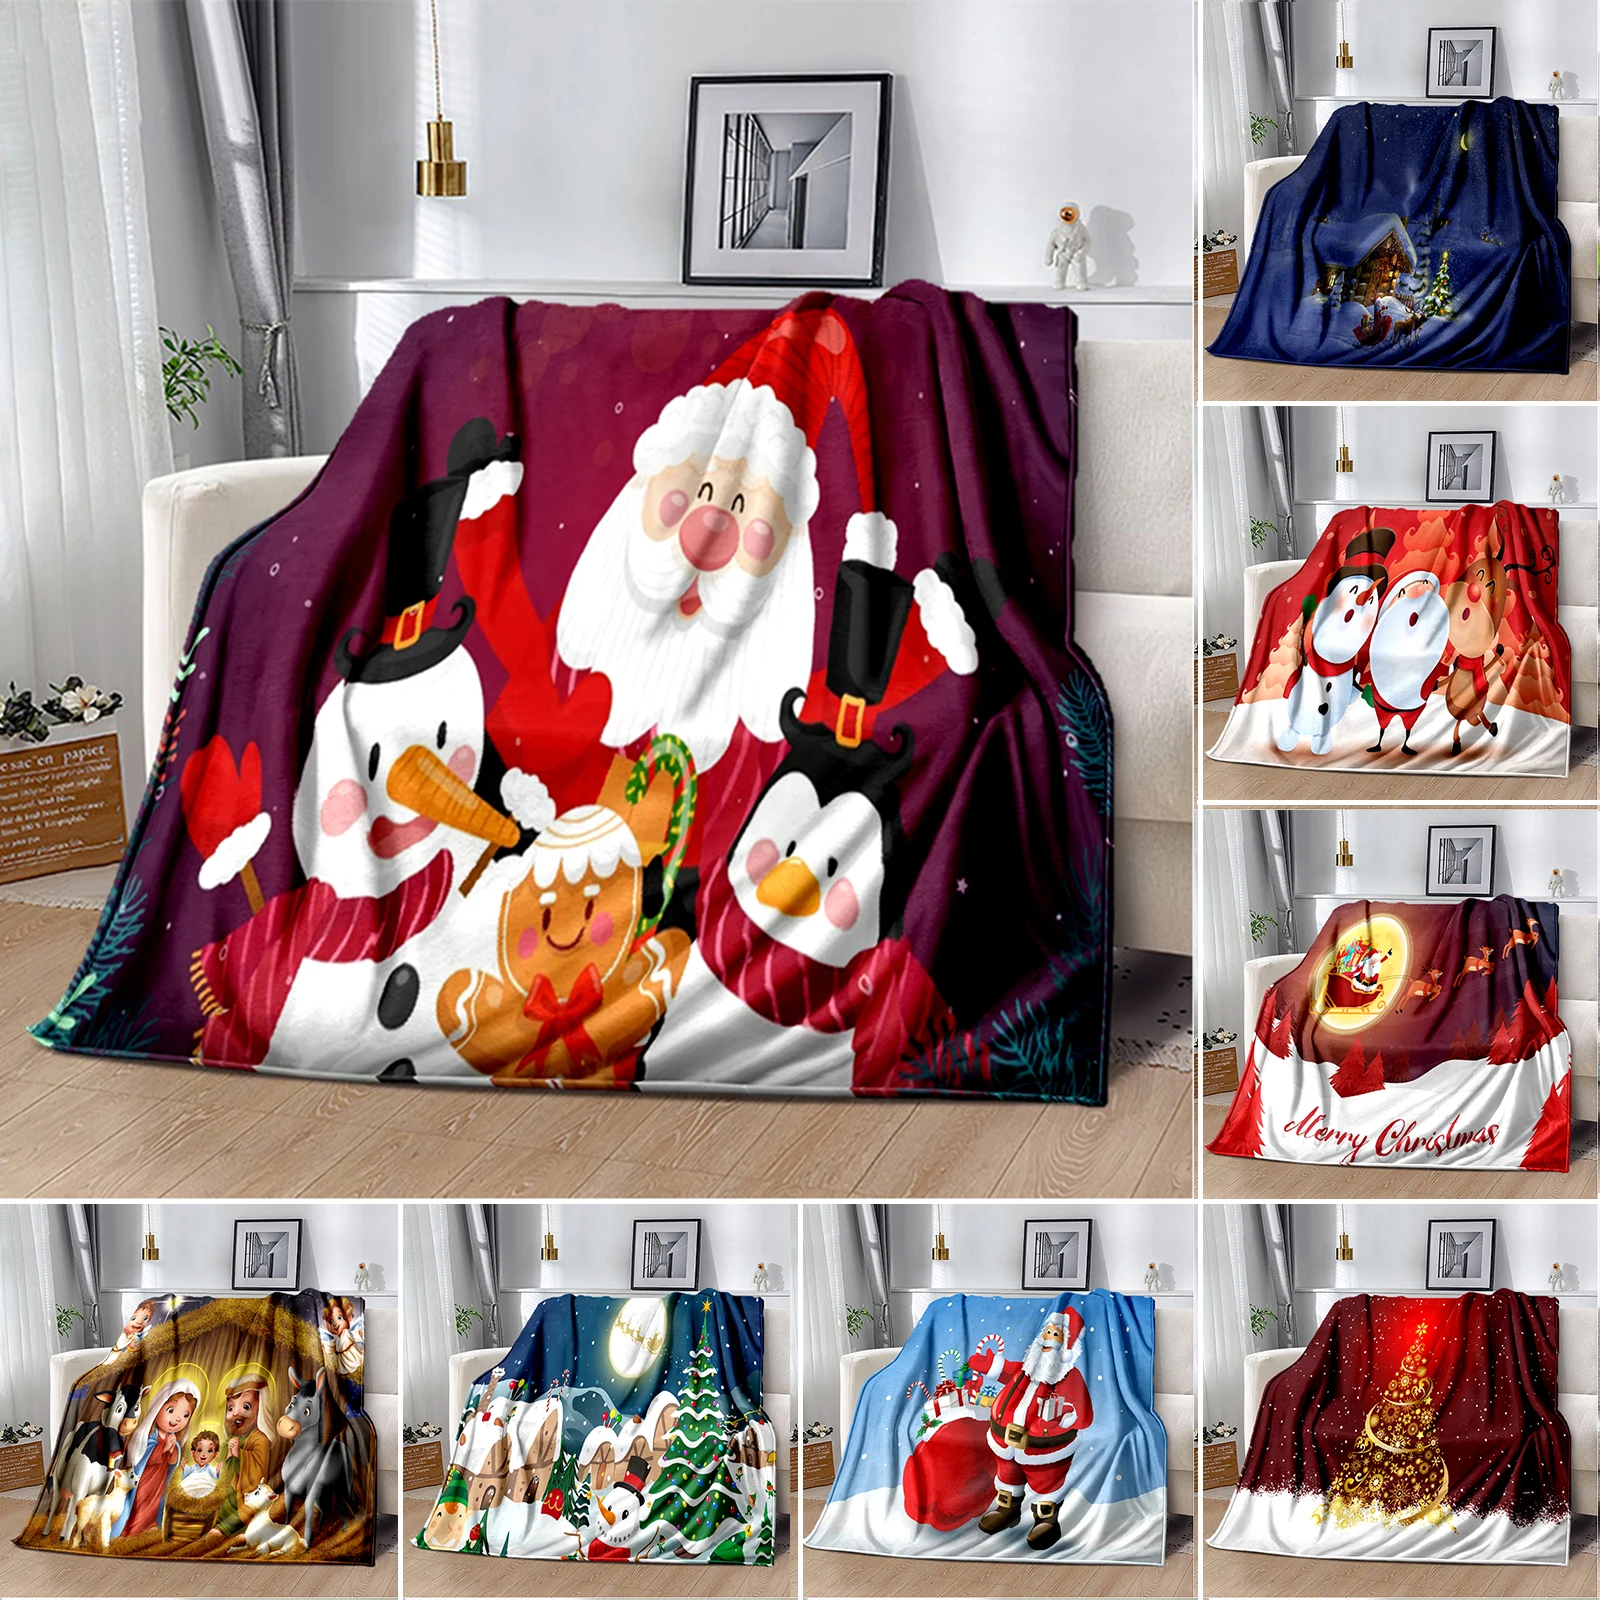 

Одеяло с 3D принтом в подарок на Рождество мягкое покрывало для дивана празднование Рождества зимнее одеяло Флисовое одеяло для кровати диван